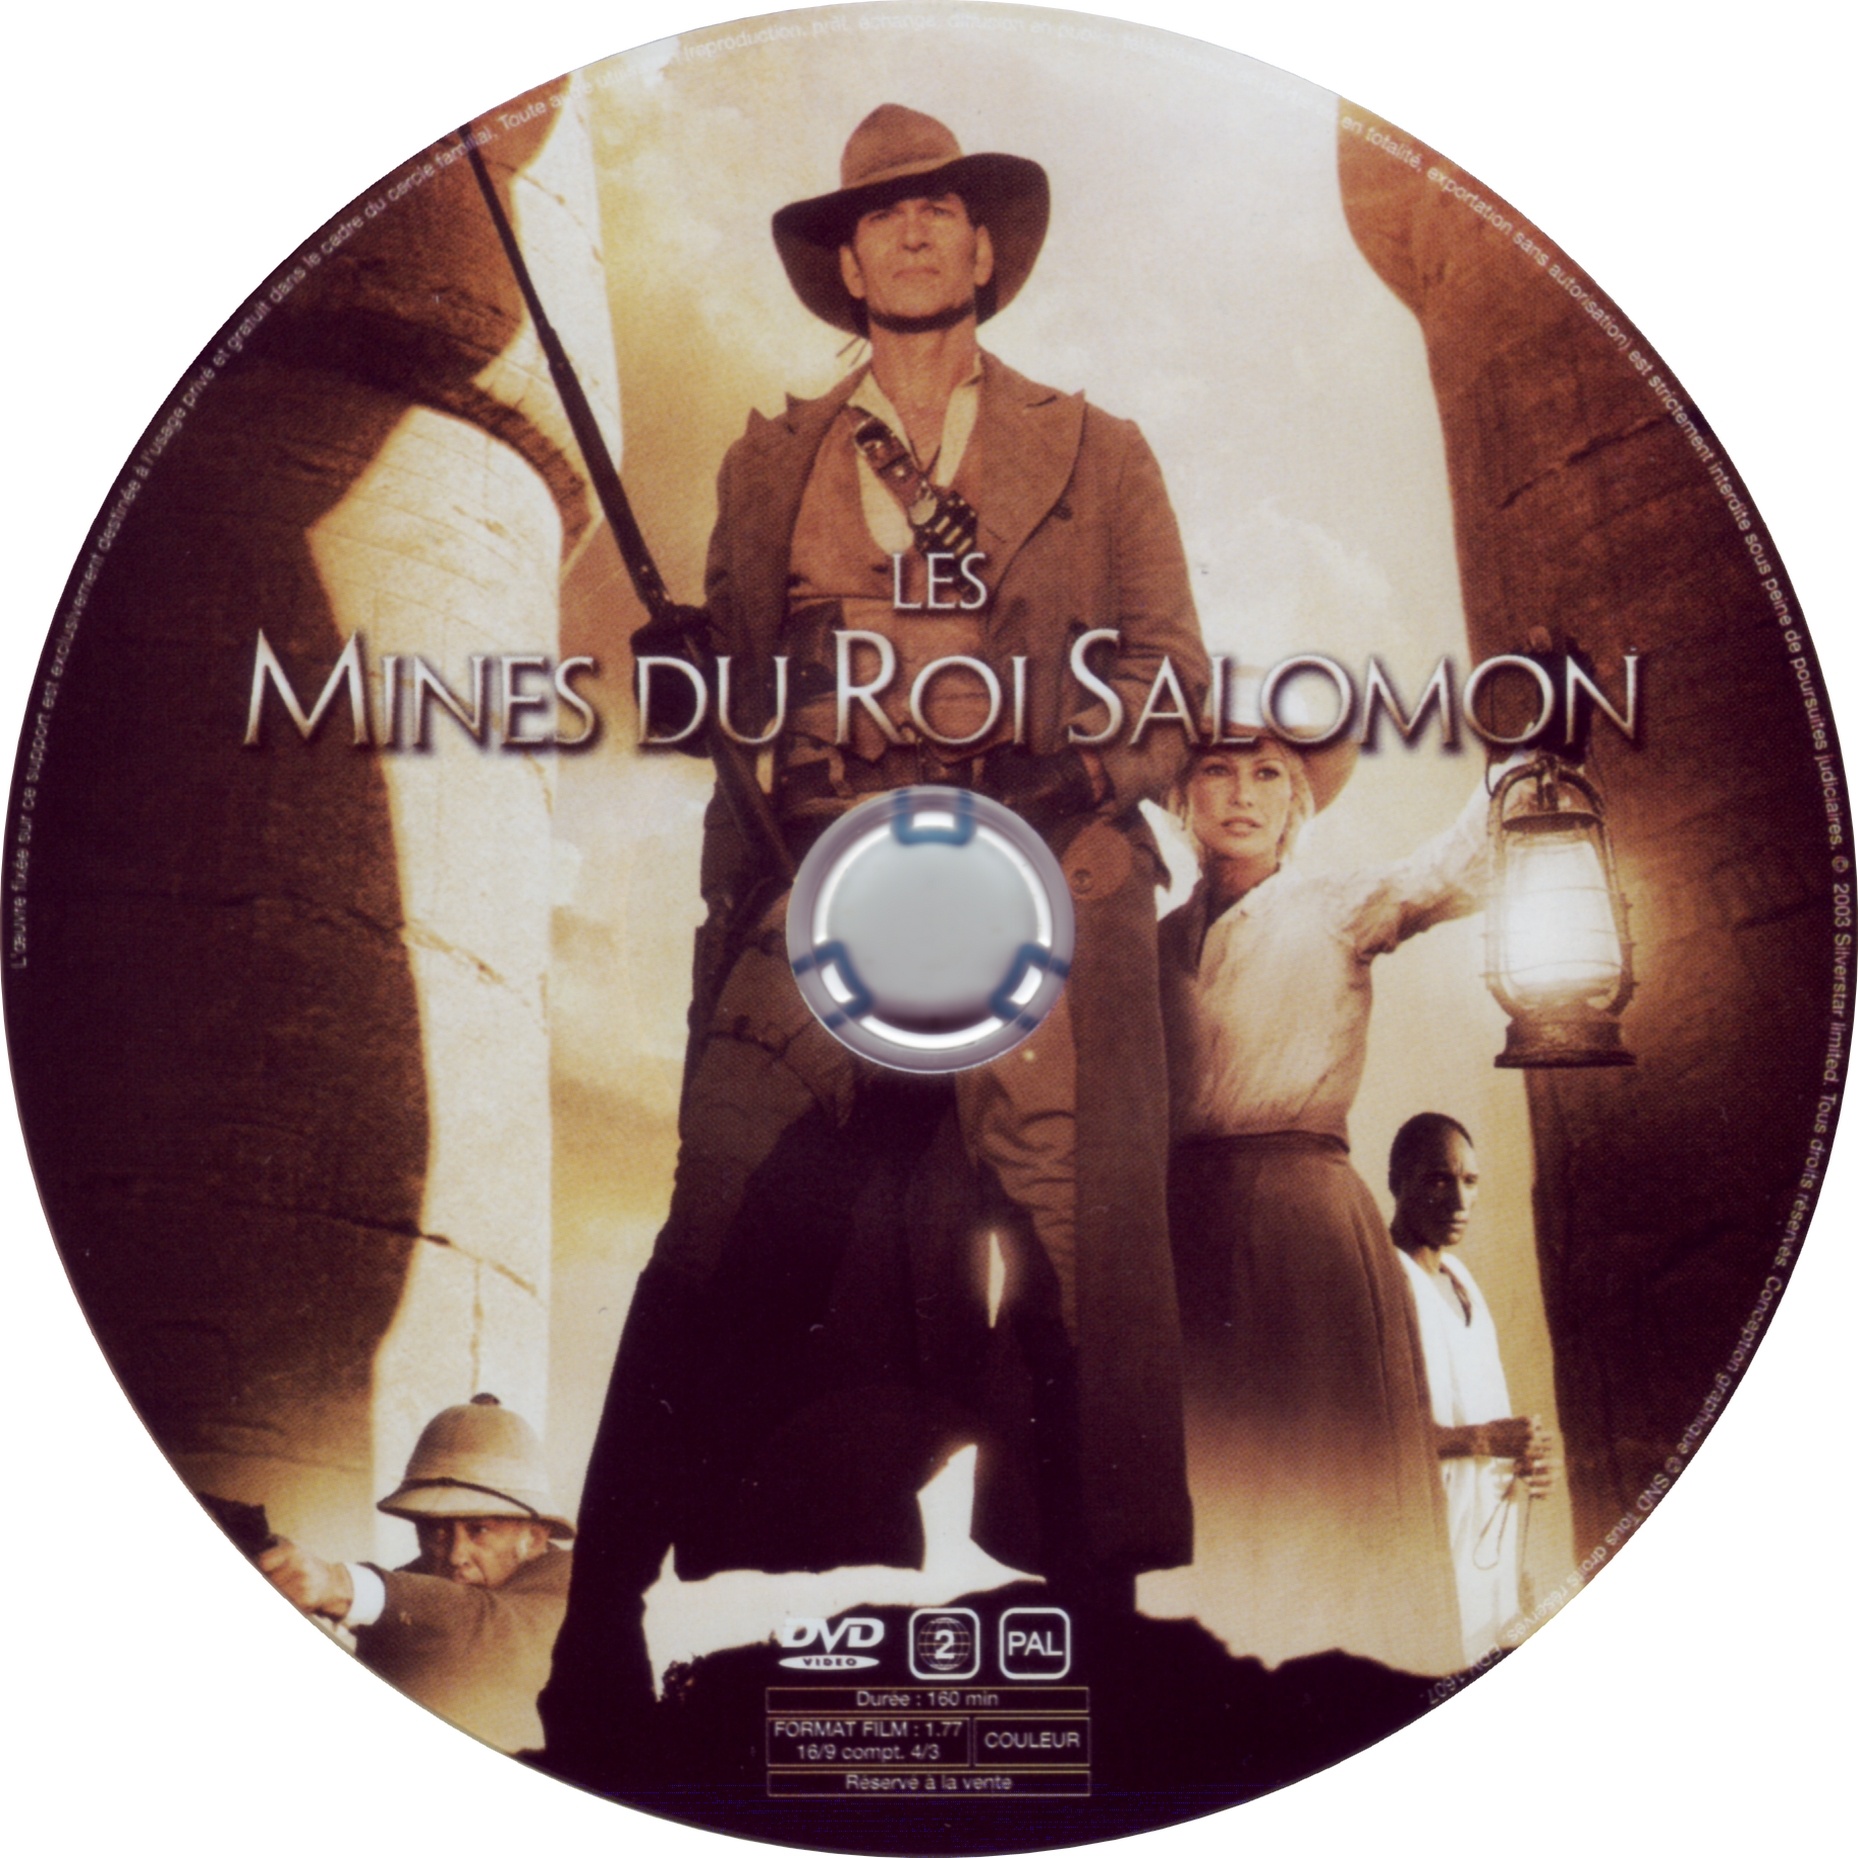 Les mines du roi salomon (Patrick Swayze)